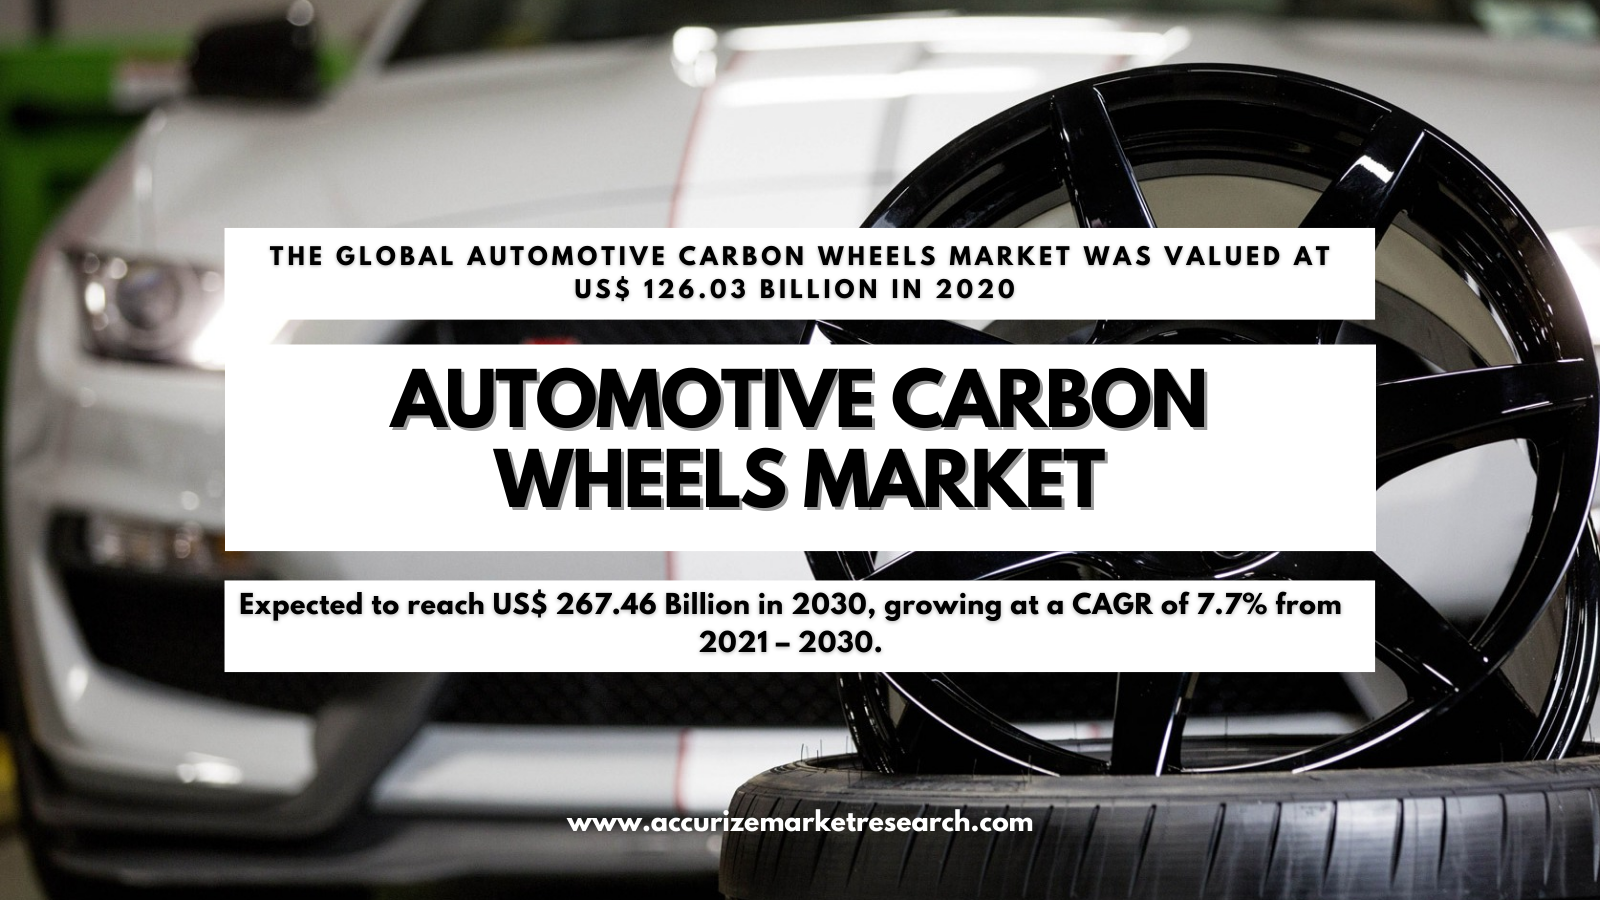 Automotive Carbon Wheels Market